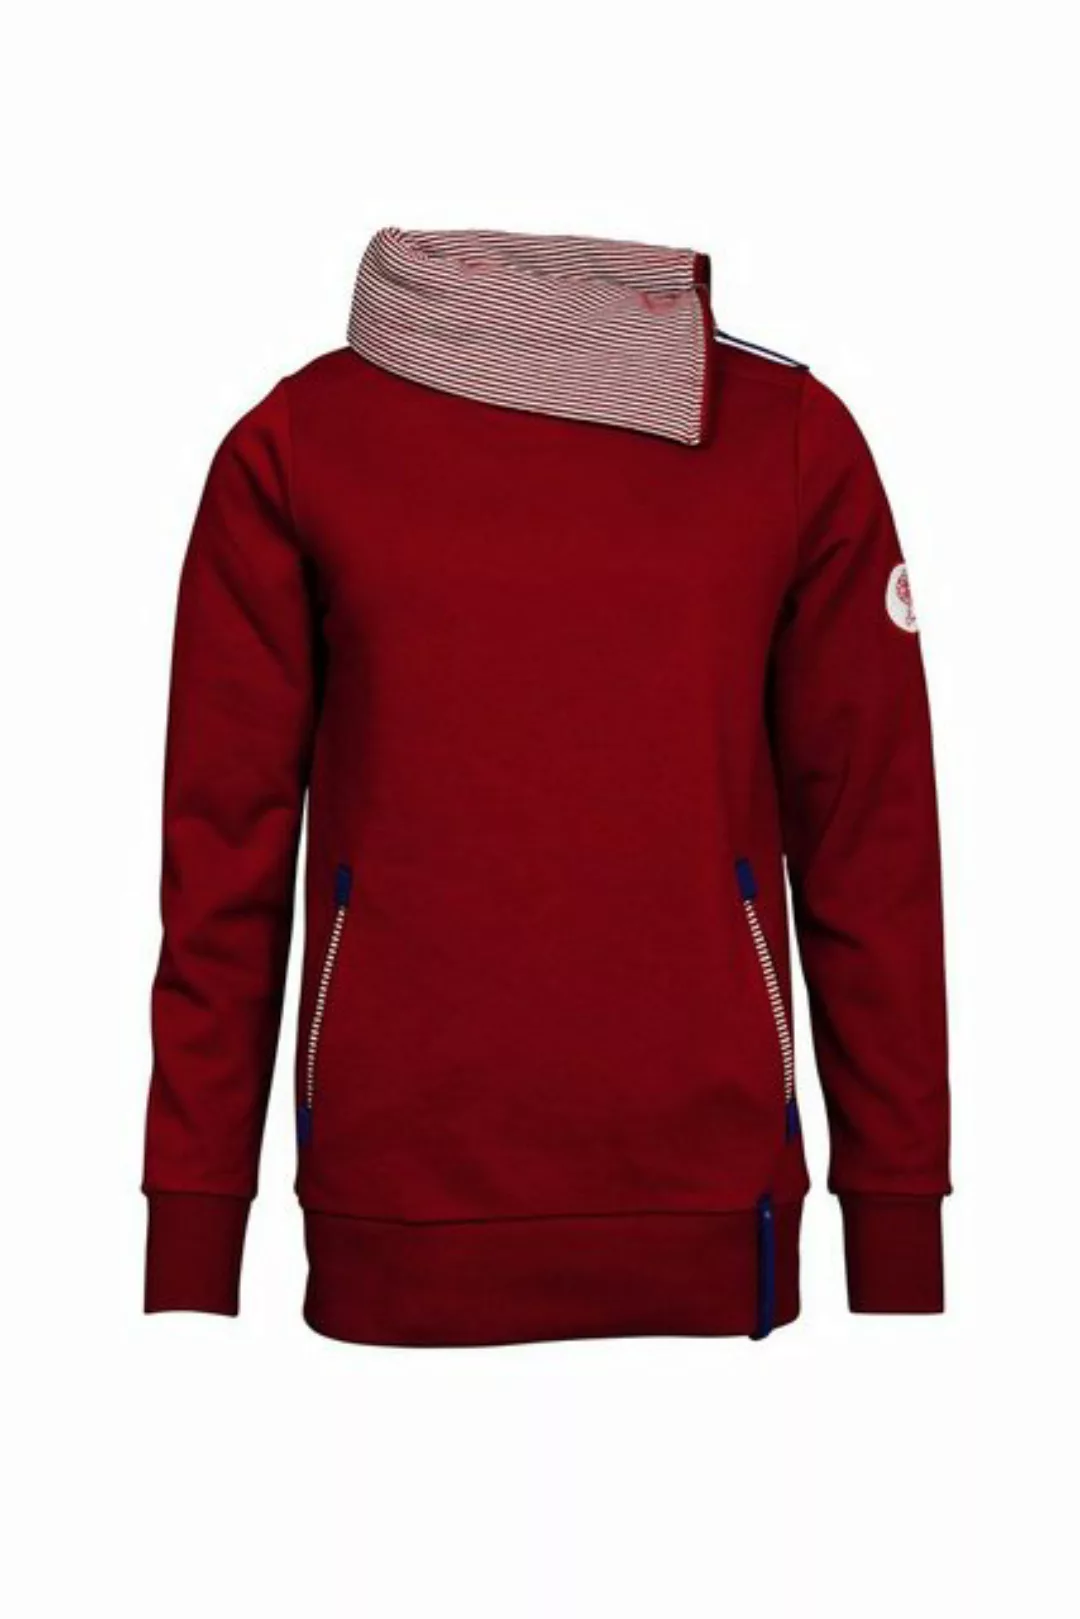 SER Sweatshirt Sweatshirt John Wayne Kragen W9923605W auch in großen Größen günstig online kaufen